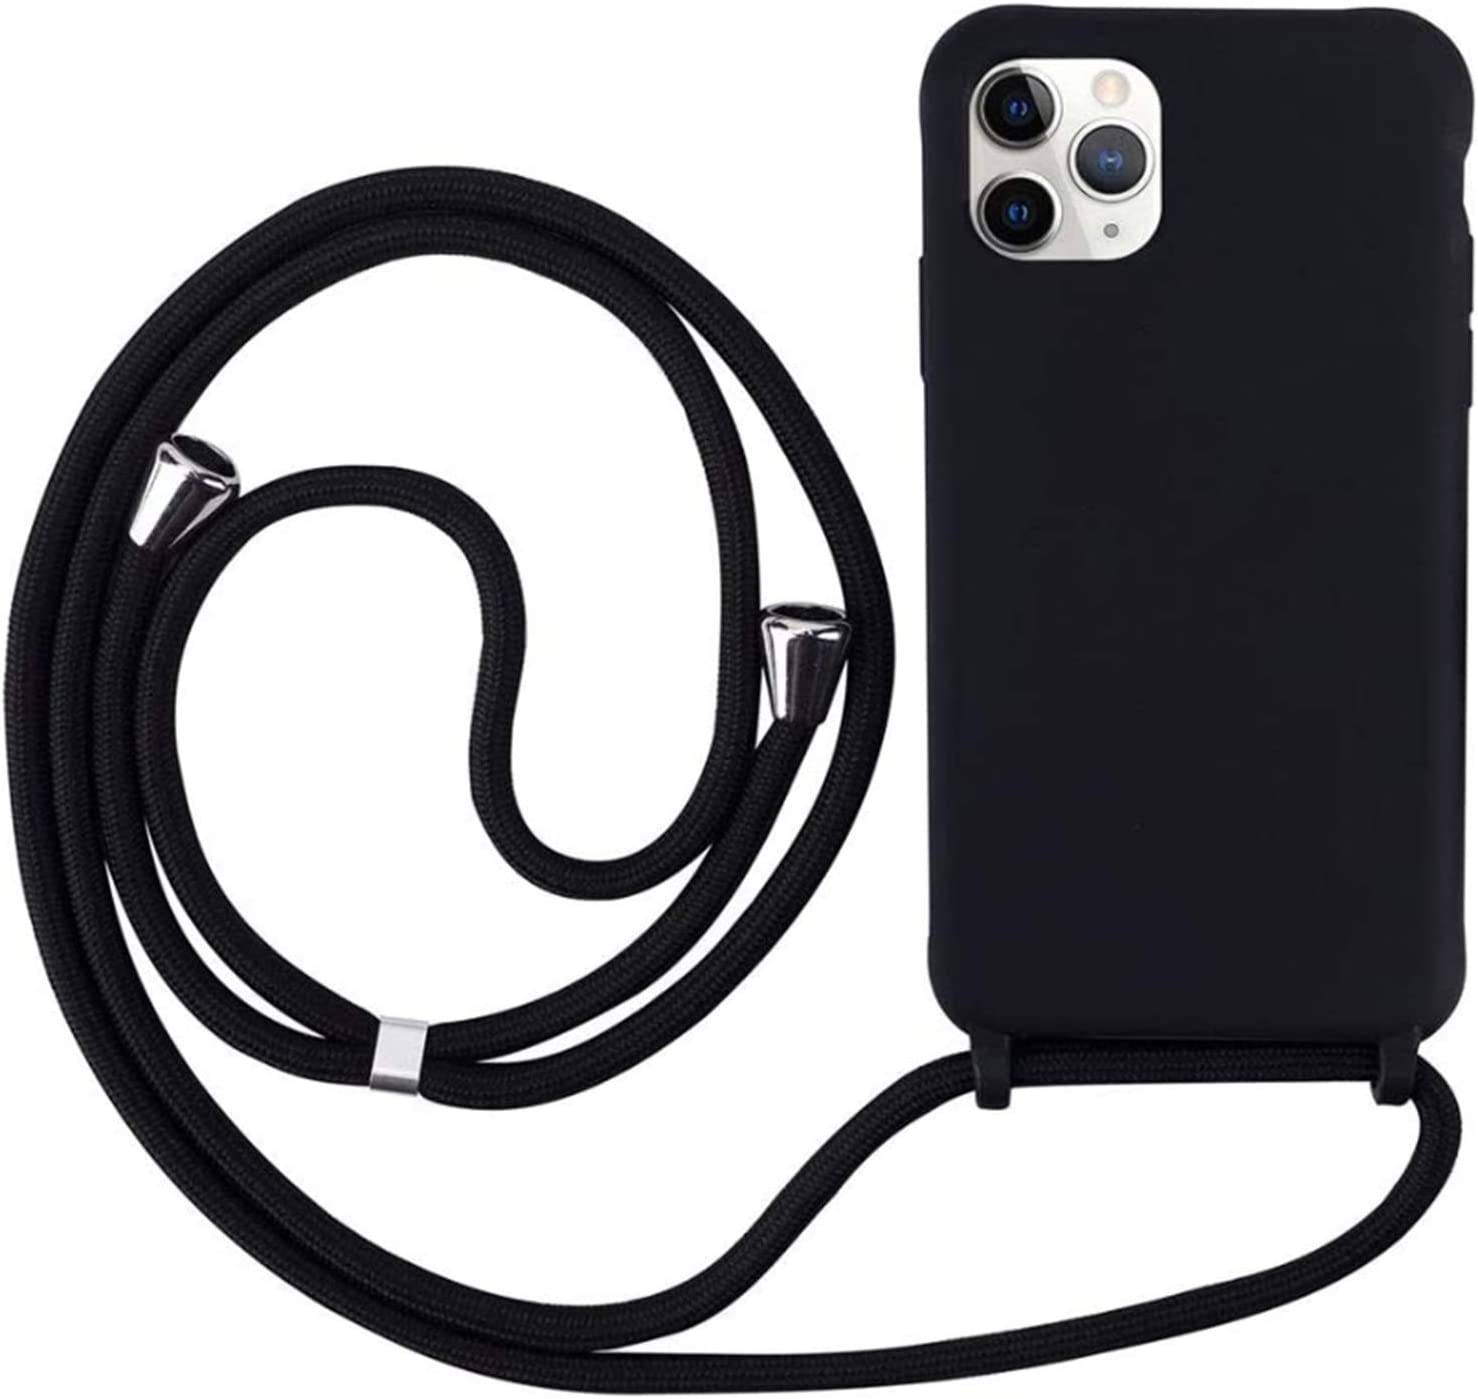 Coque avec cordon pour iPhone 12/ 12 Pro - Protection en Silicone Case - Coque tour de cou, bandoulière iPhone - Coques&Co